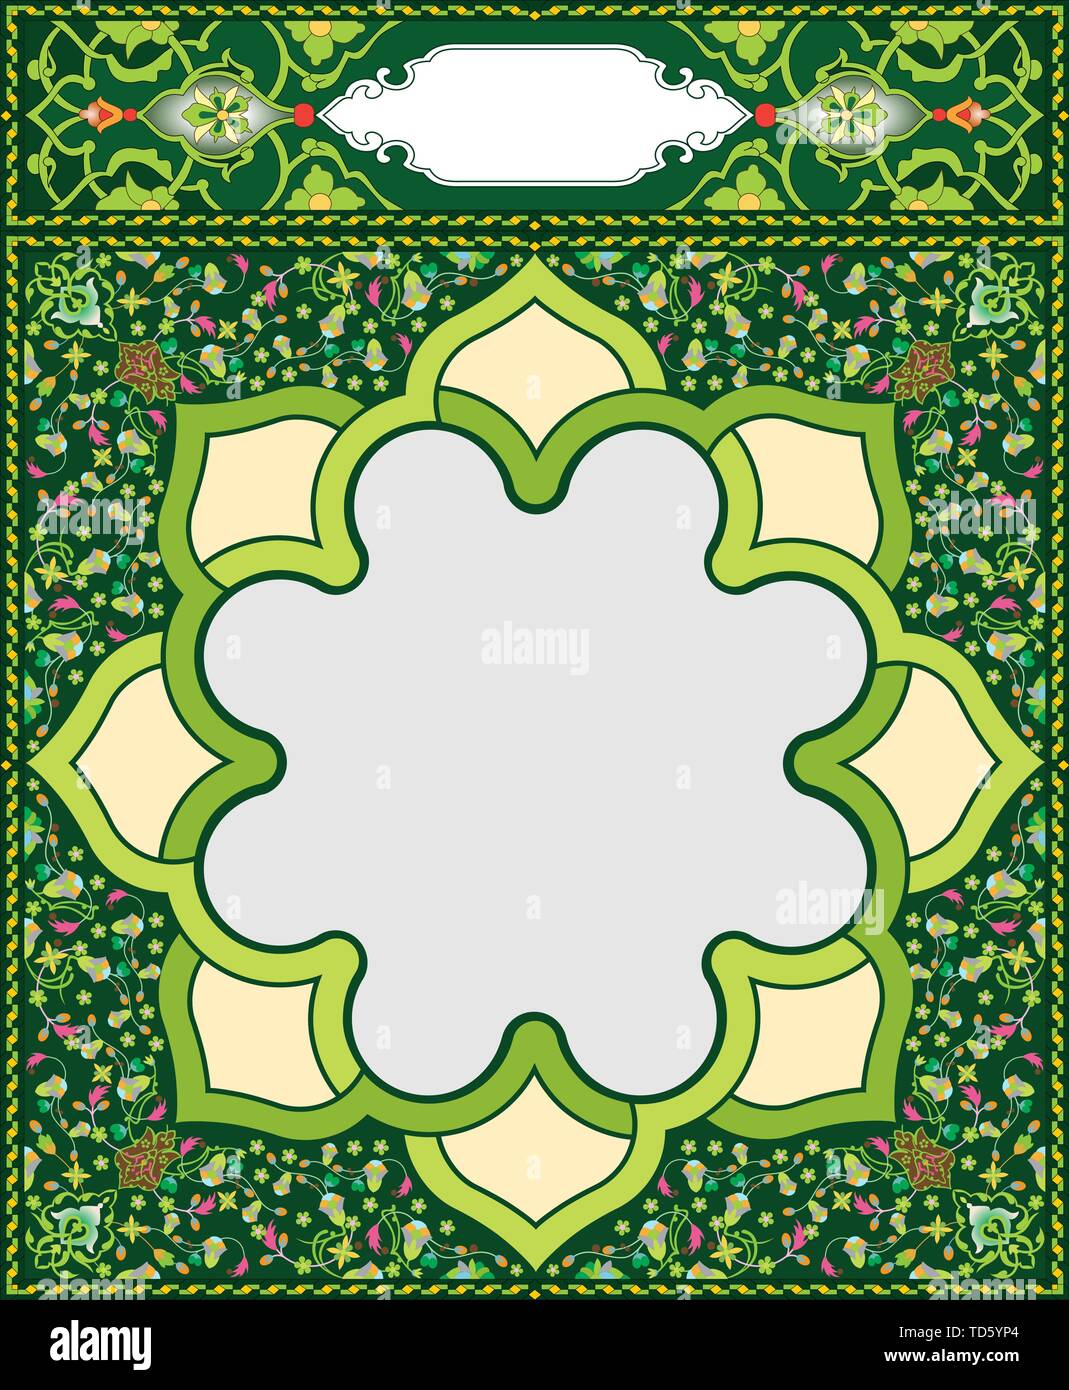 L'Art islamique du châssis et de la frontière pour l'intérieur de la couverture du livre de prière, prêt ajouter un texte Illustration de Vecteur